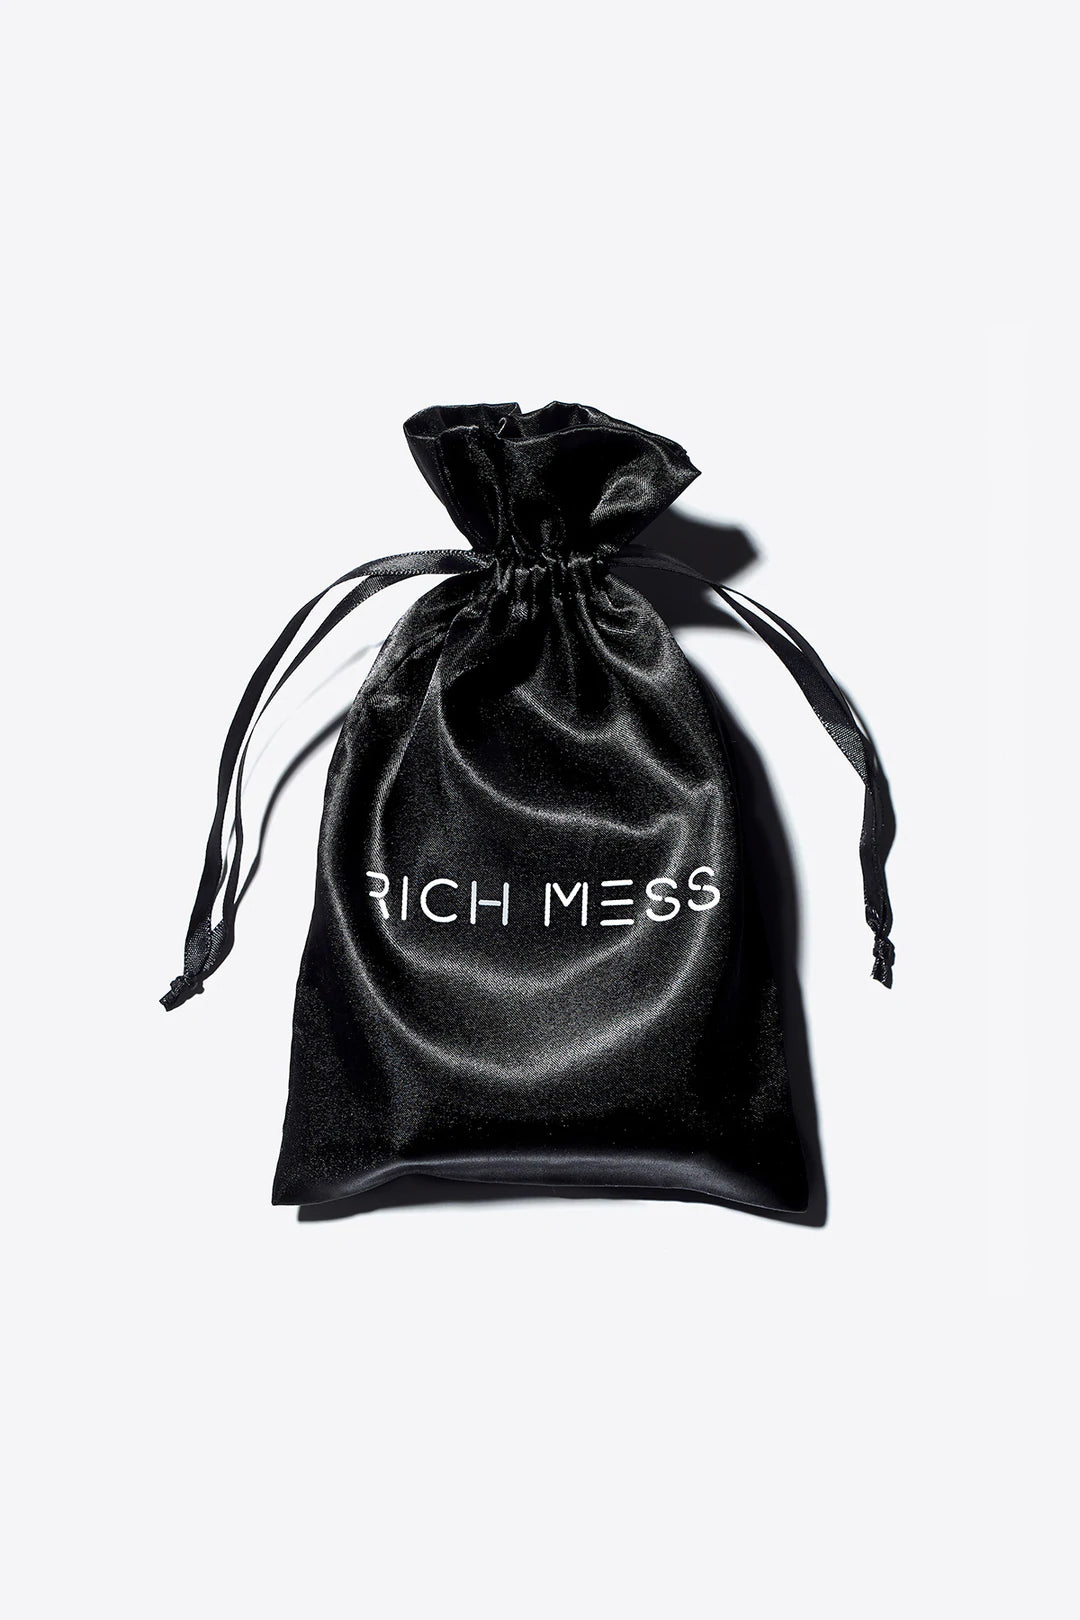 Parfum- Rich Mess